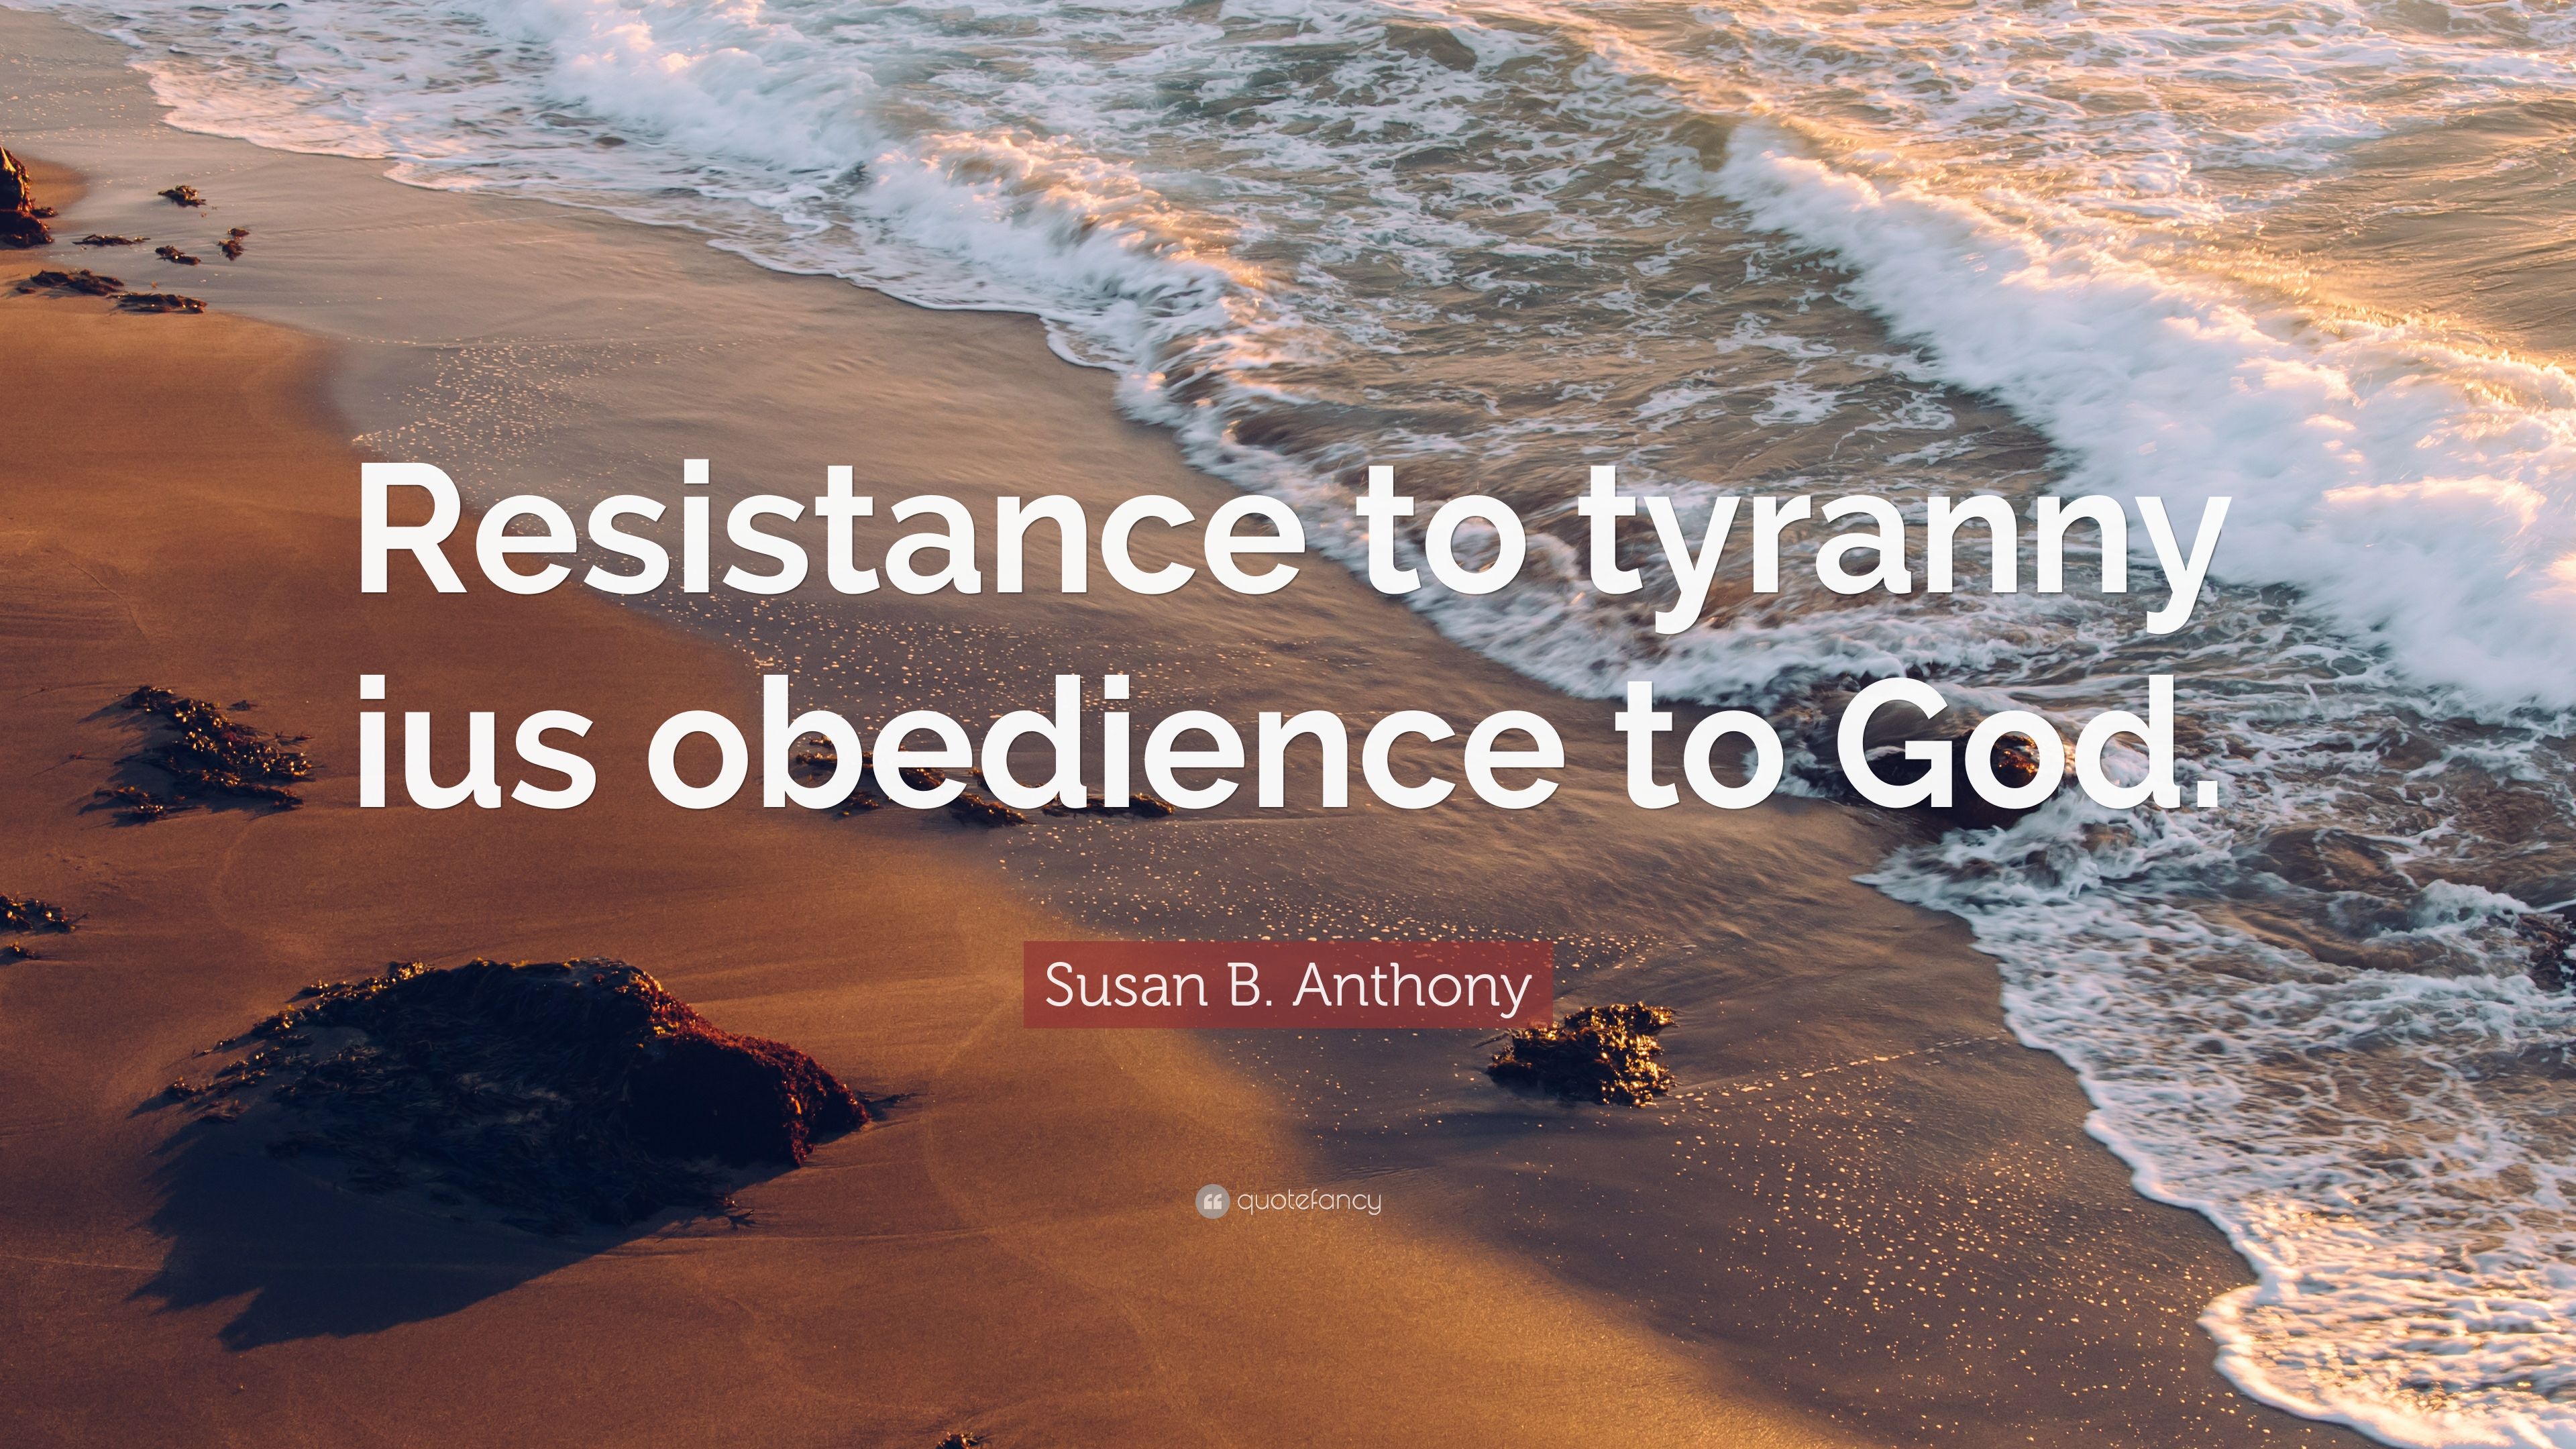 La resistencia al tirano es obediencia a Dios